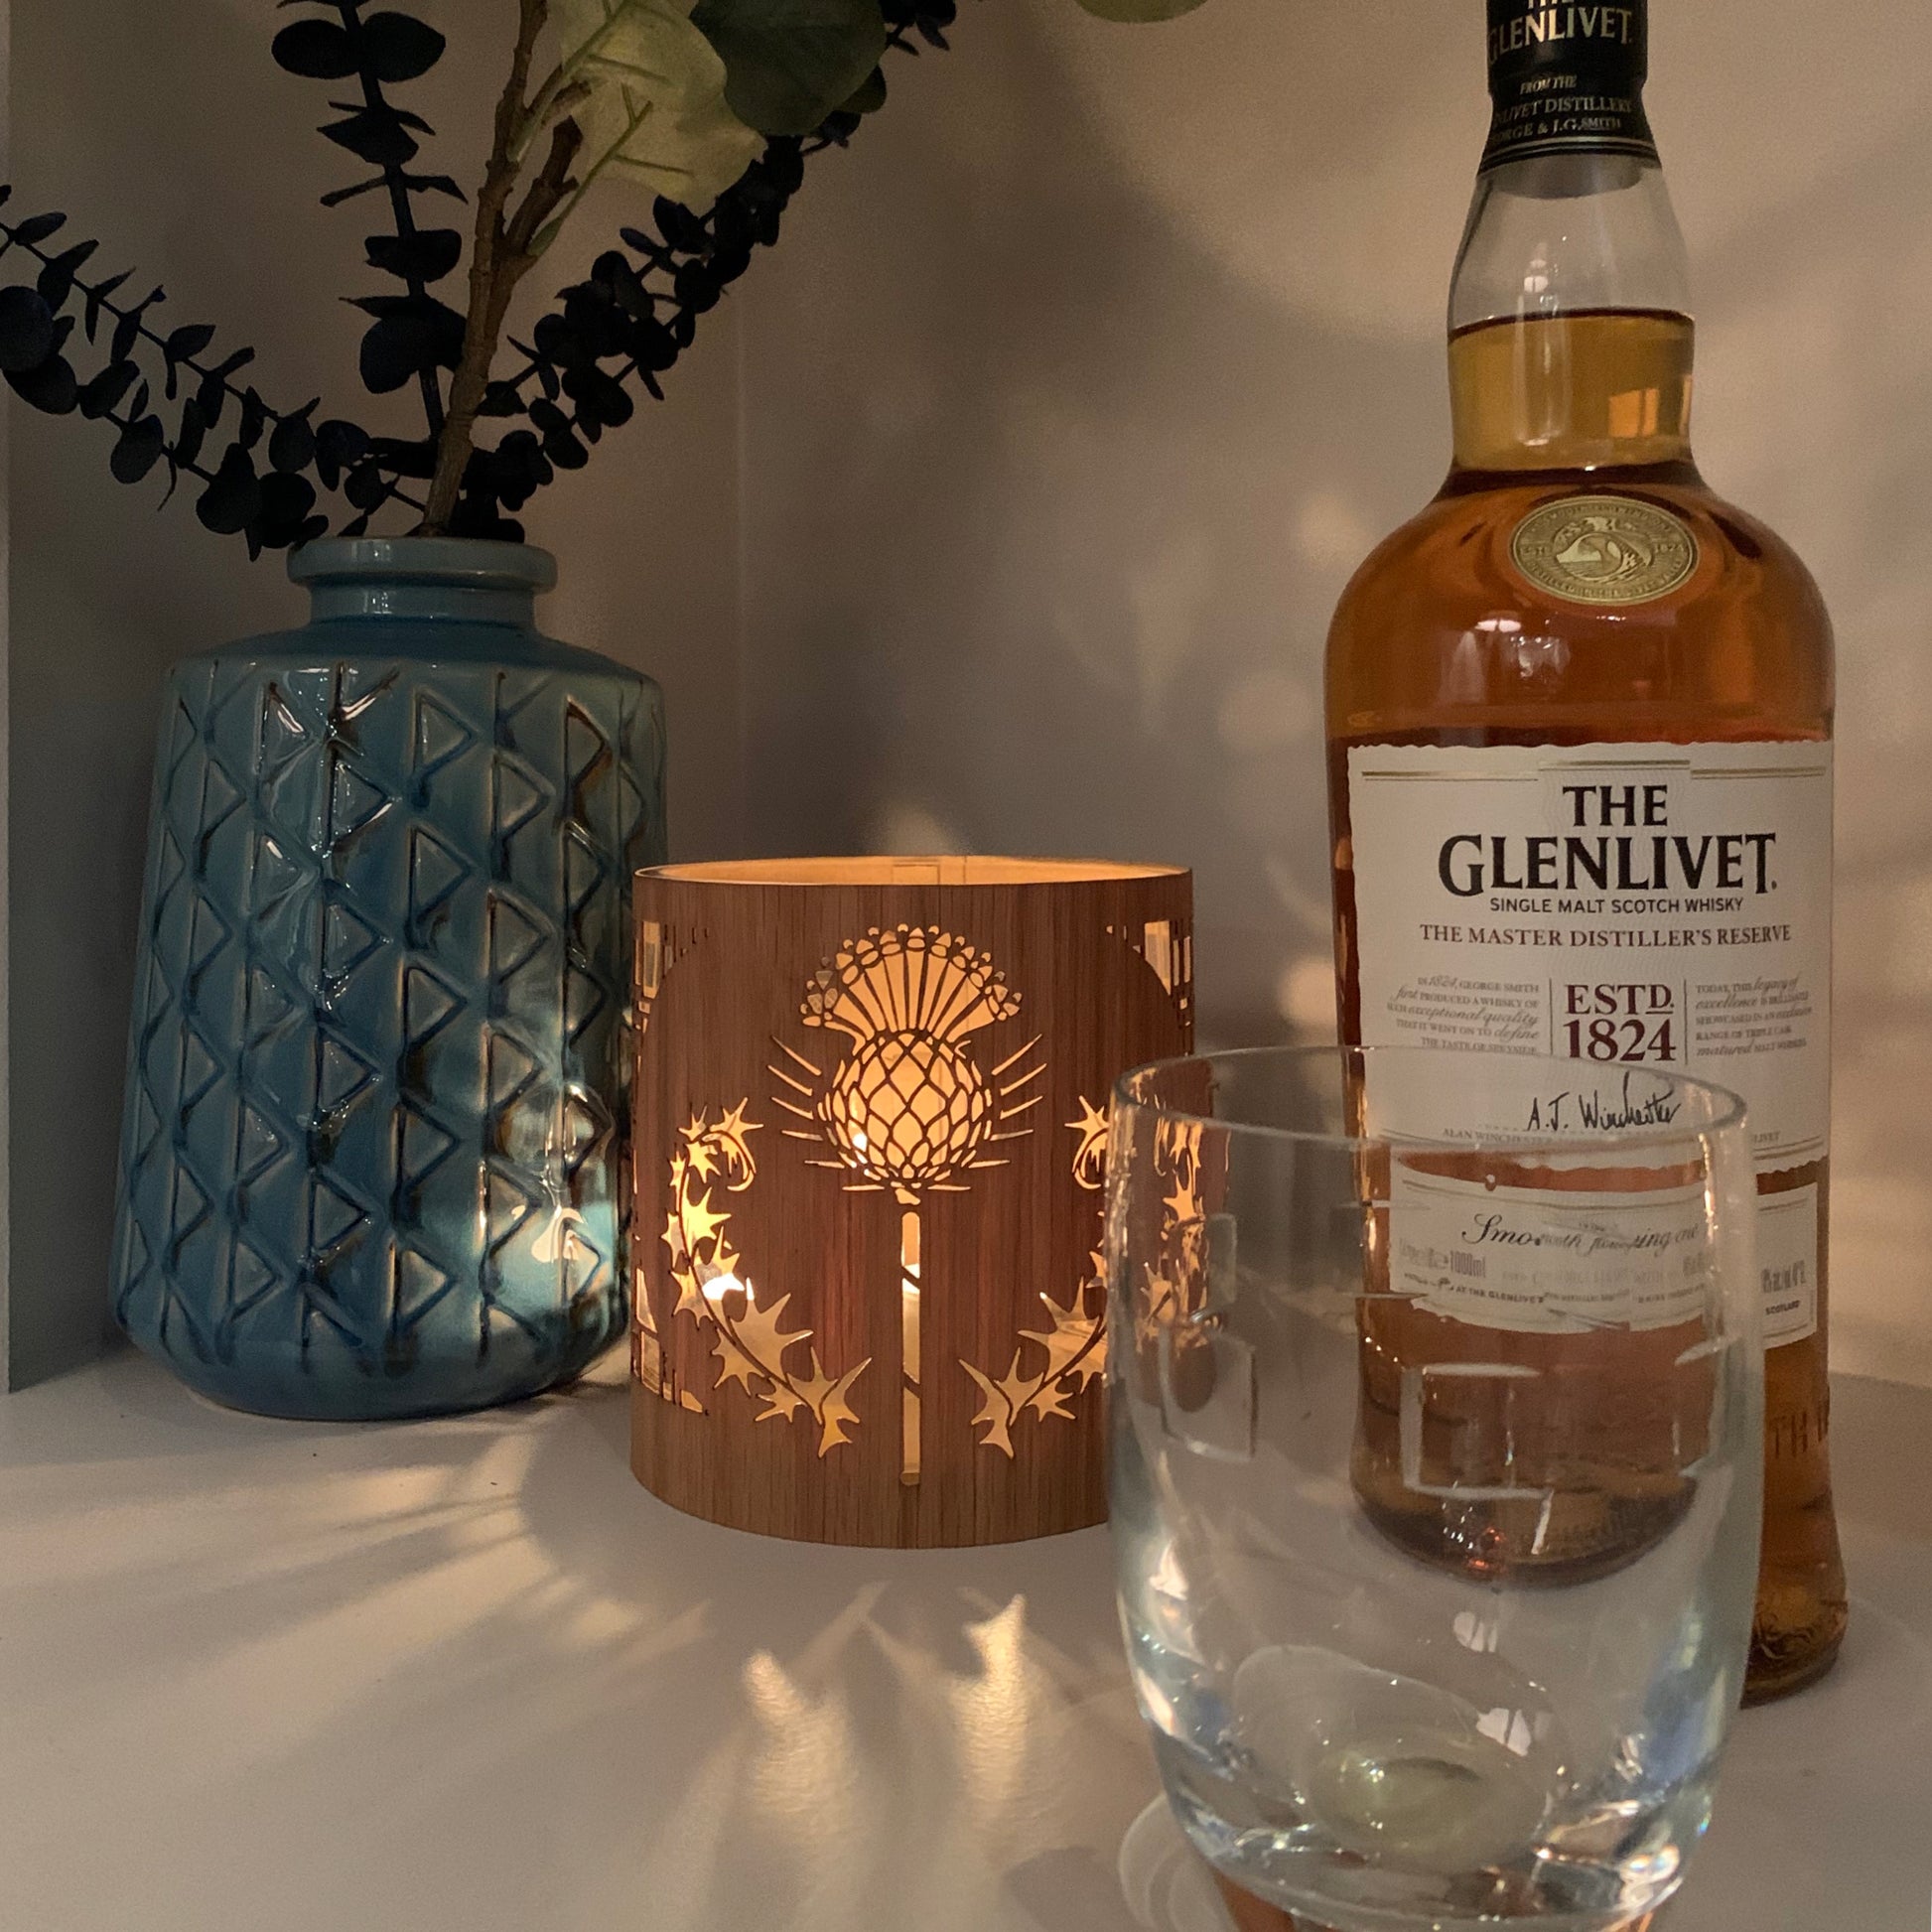 thistle art lantern in medium white oak  lantern cozy with a bottle of The Glenlivet